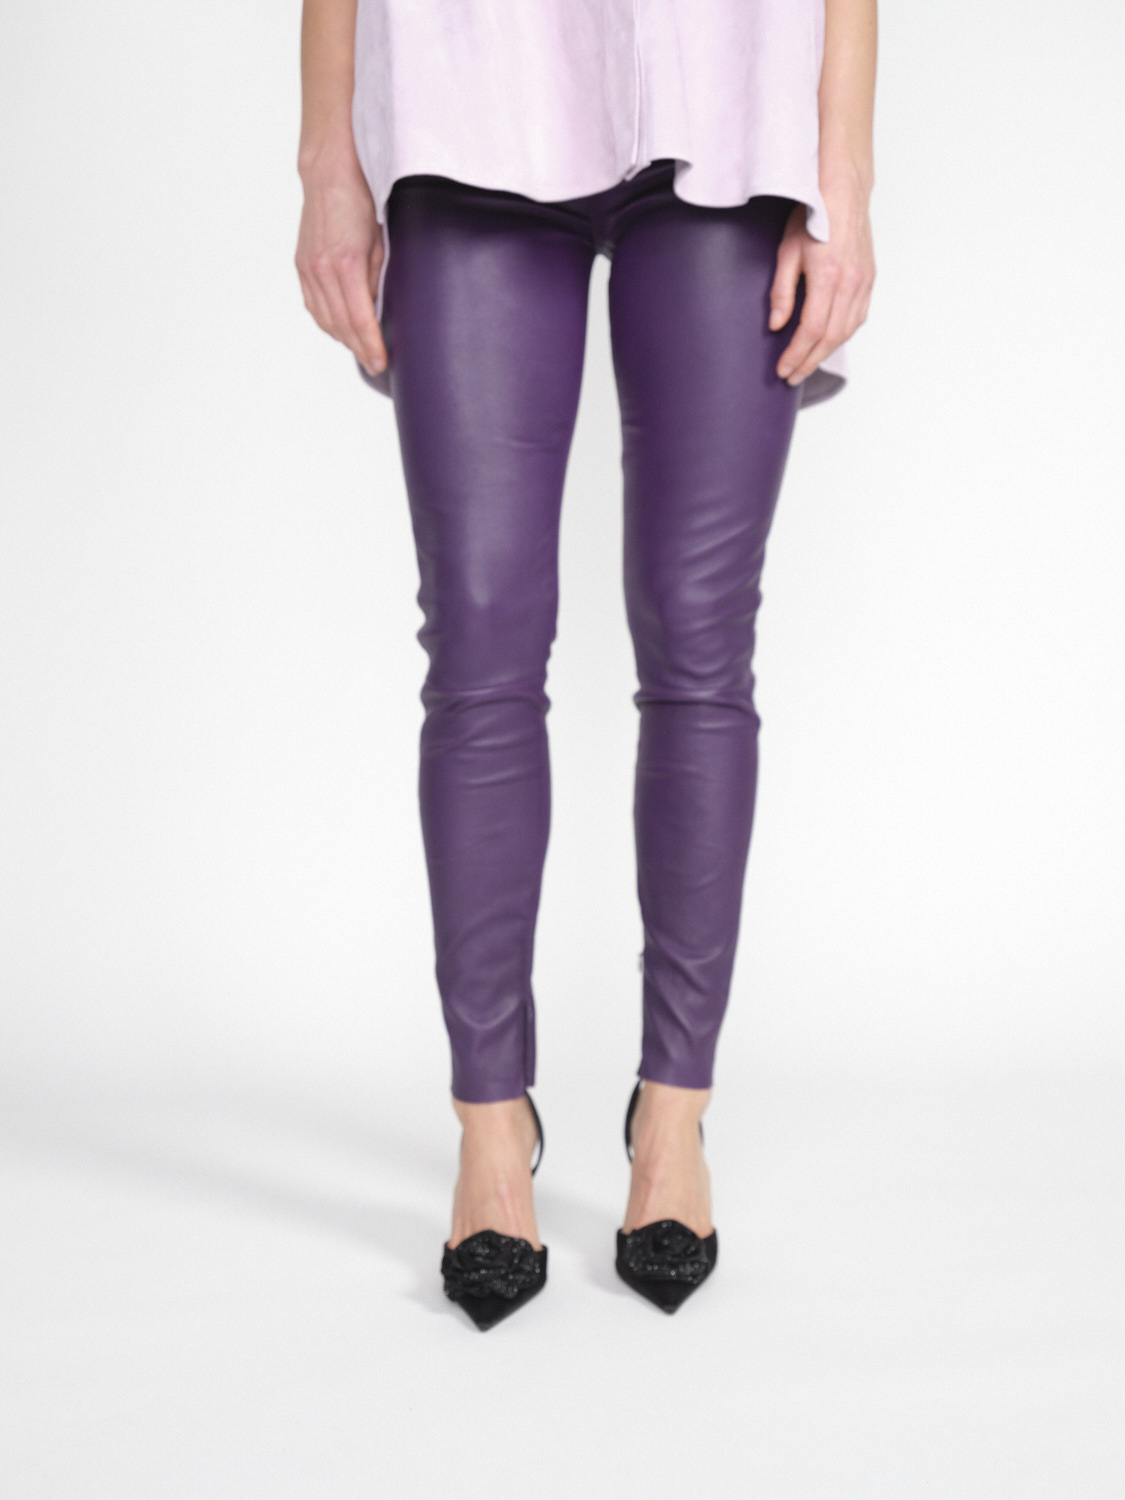 jitrois Pantalon Wynn Agneau - Pants in lamb leather purple 38